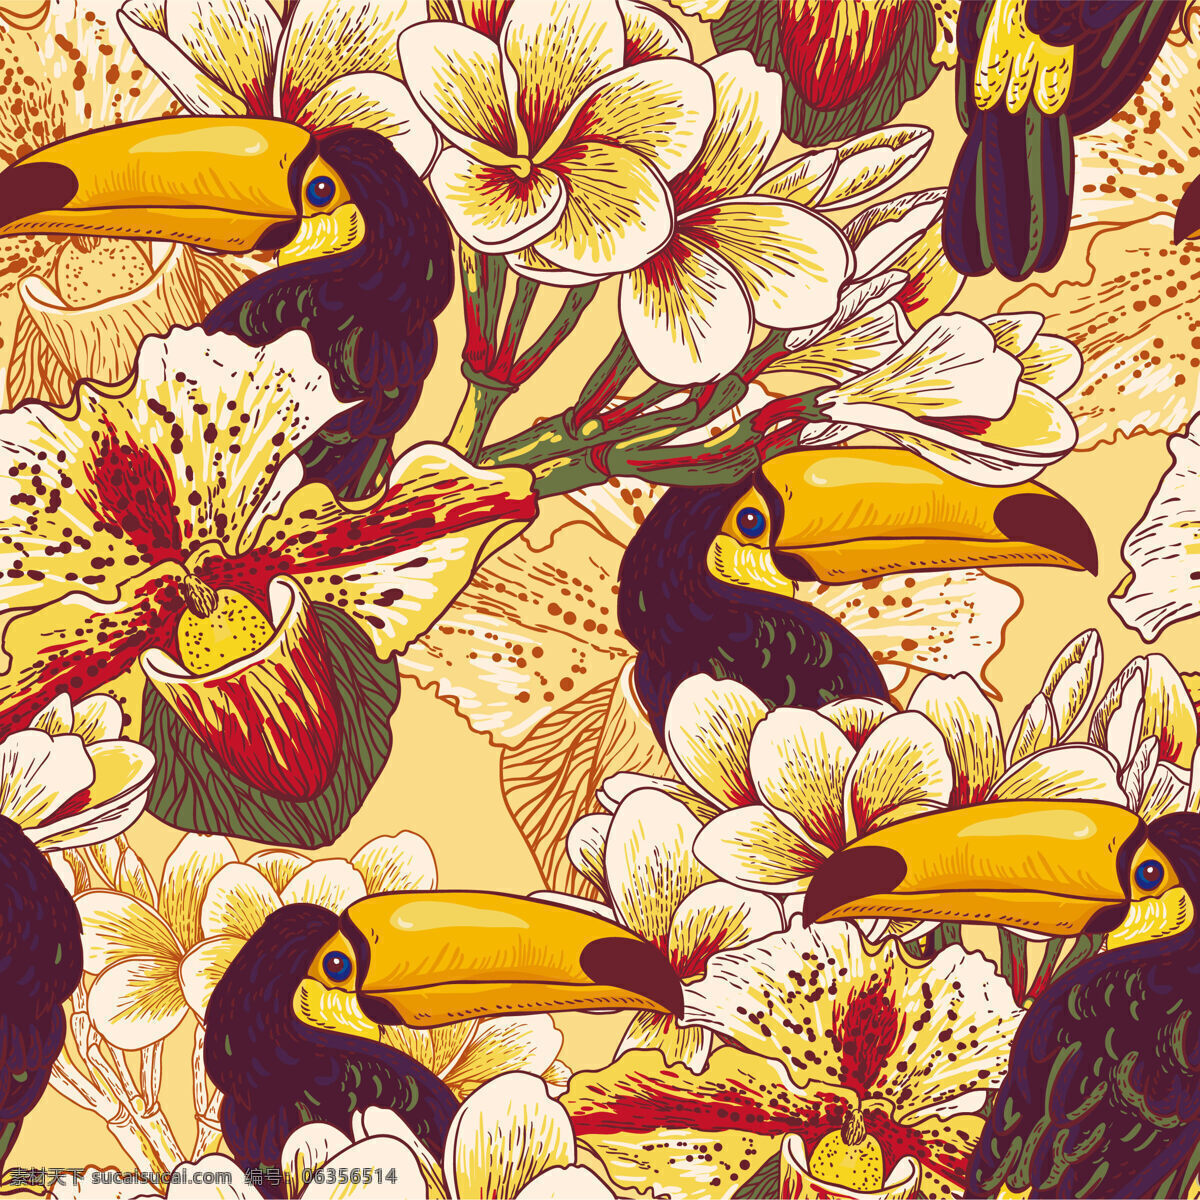 橙色 艳丽 啄木鸟 壁纸 图案 装饰设计 壁纸图案 浅黄色底色 浅色花朵